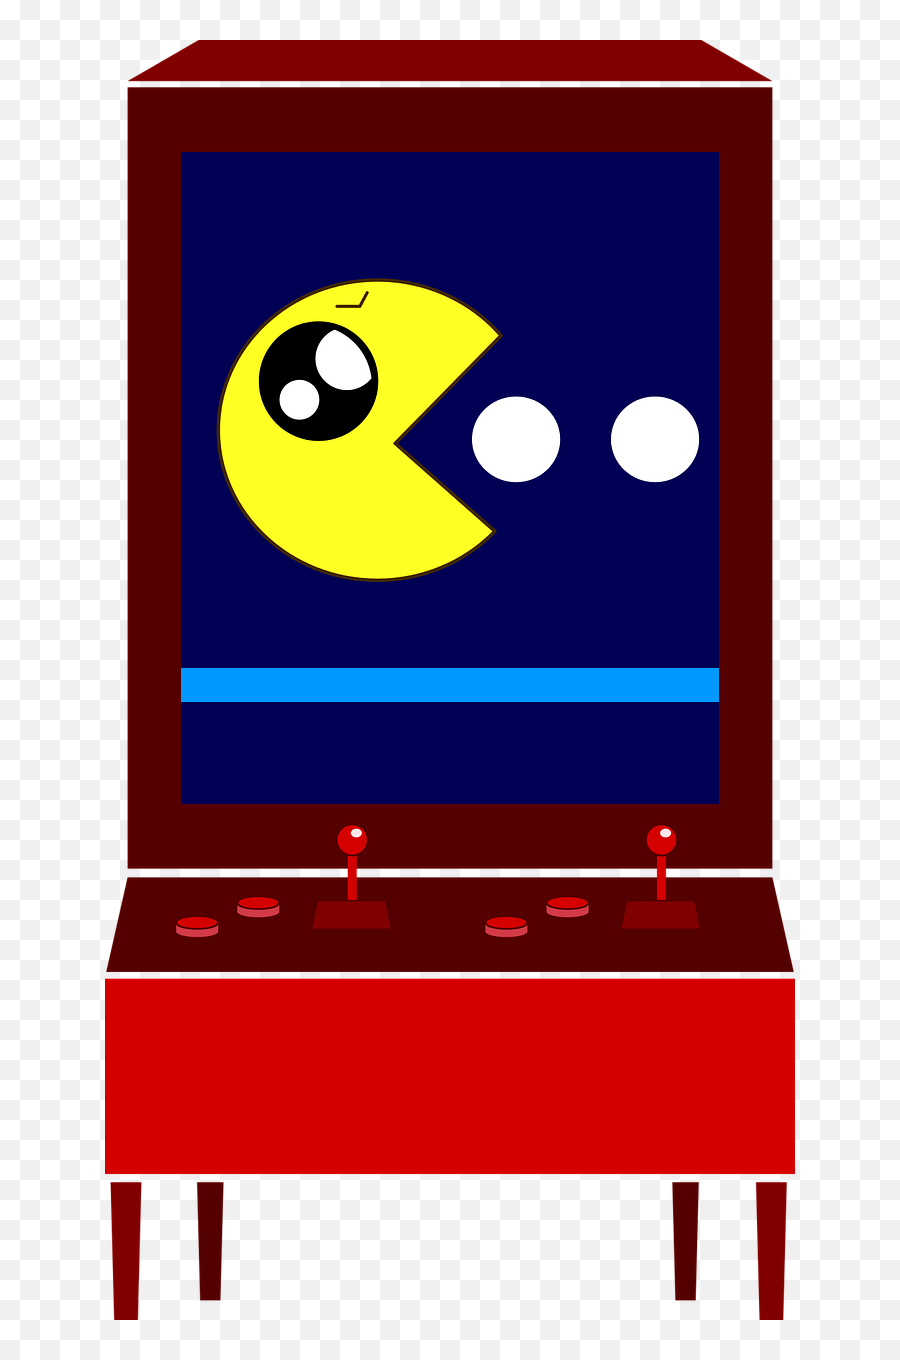 Emoticon Machine For Videojuegos Pacman - Dot Emoji,Emoticon Video